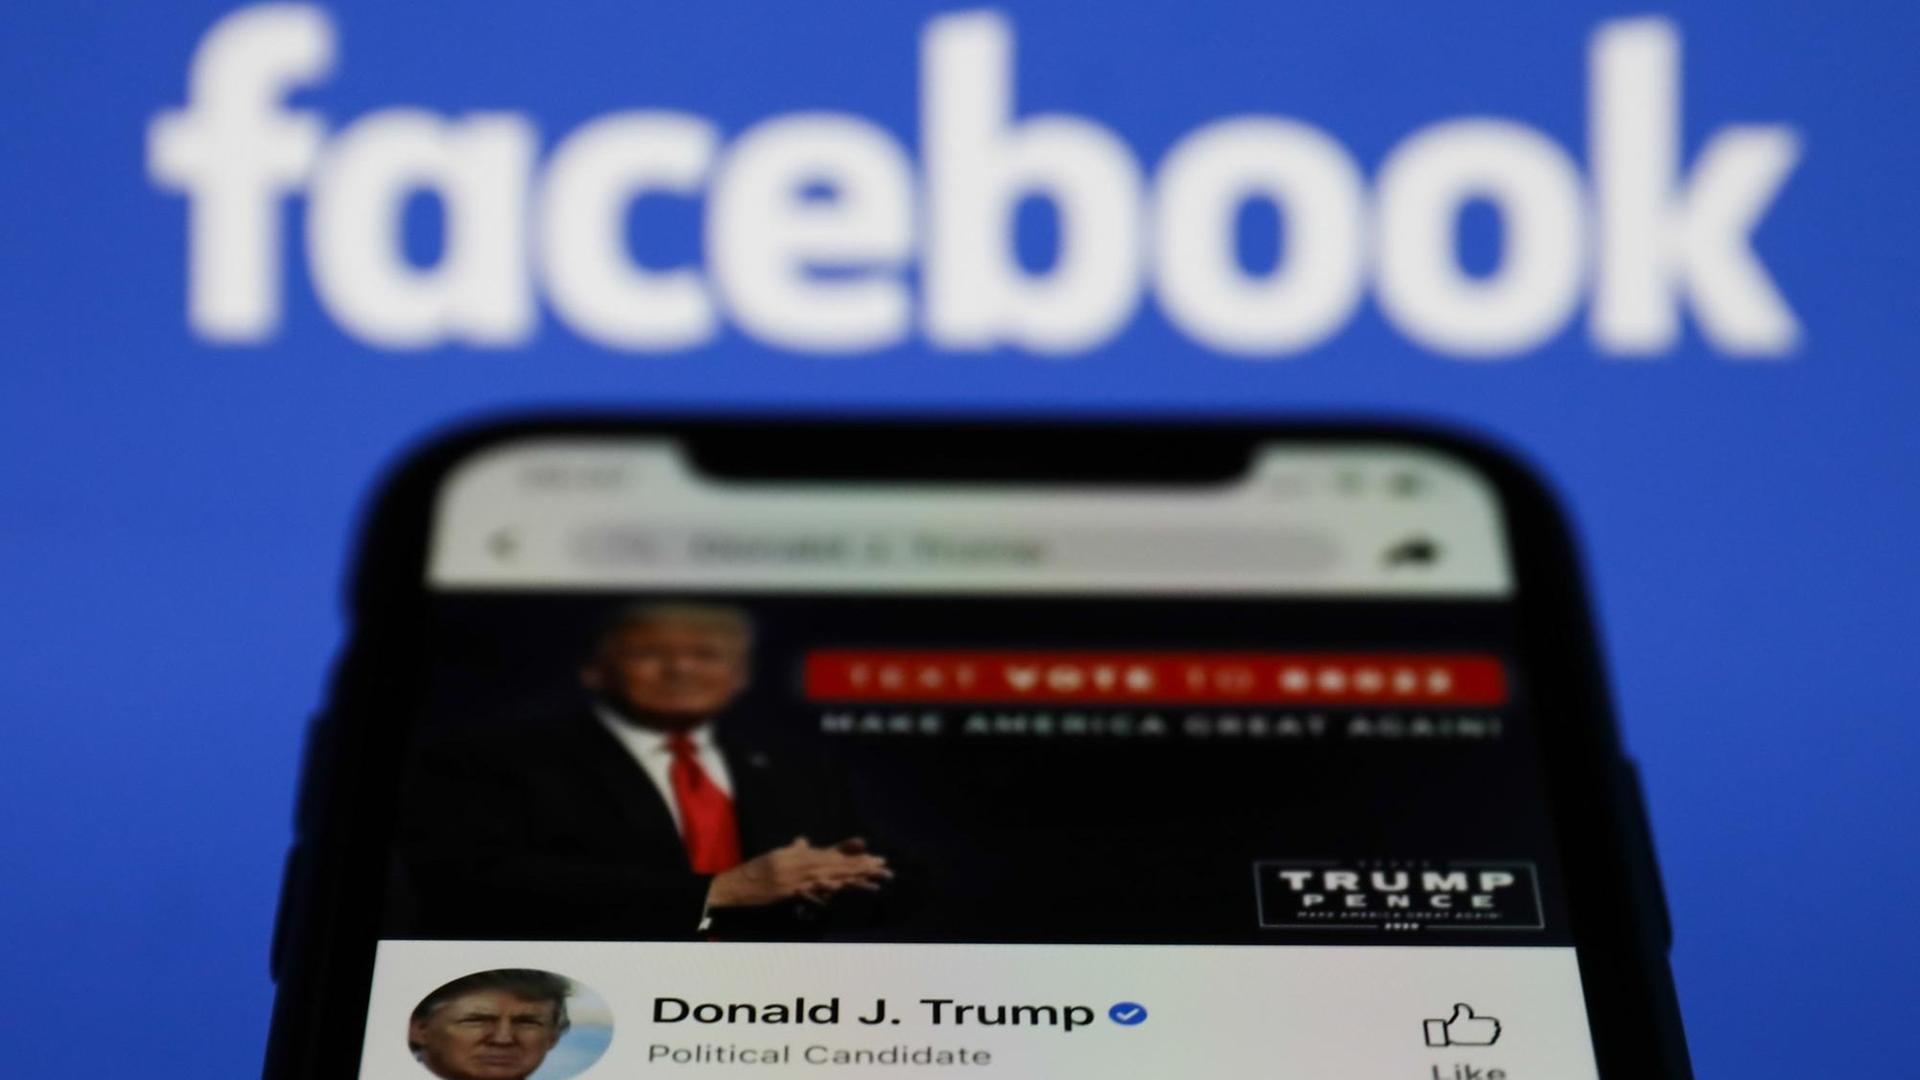 Ein Smartphone, auf dem Donald Trump's Facebook-Account zu sehen ist.